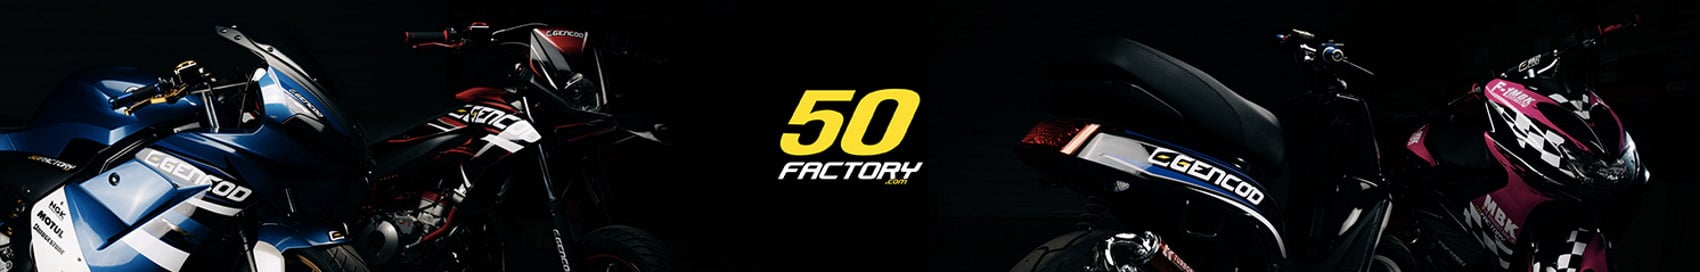 información general sobre 50 Factory